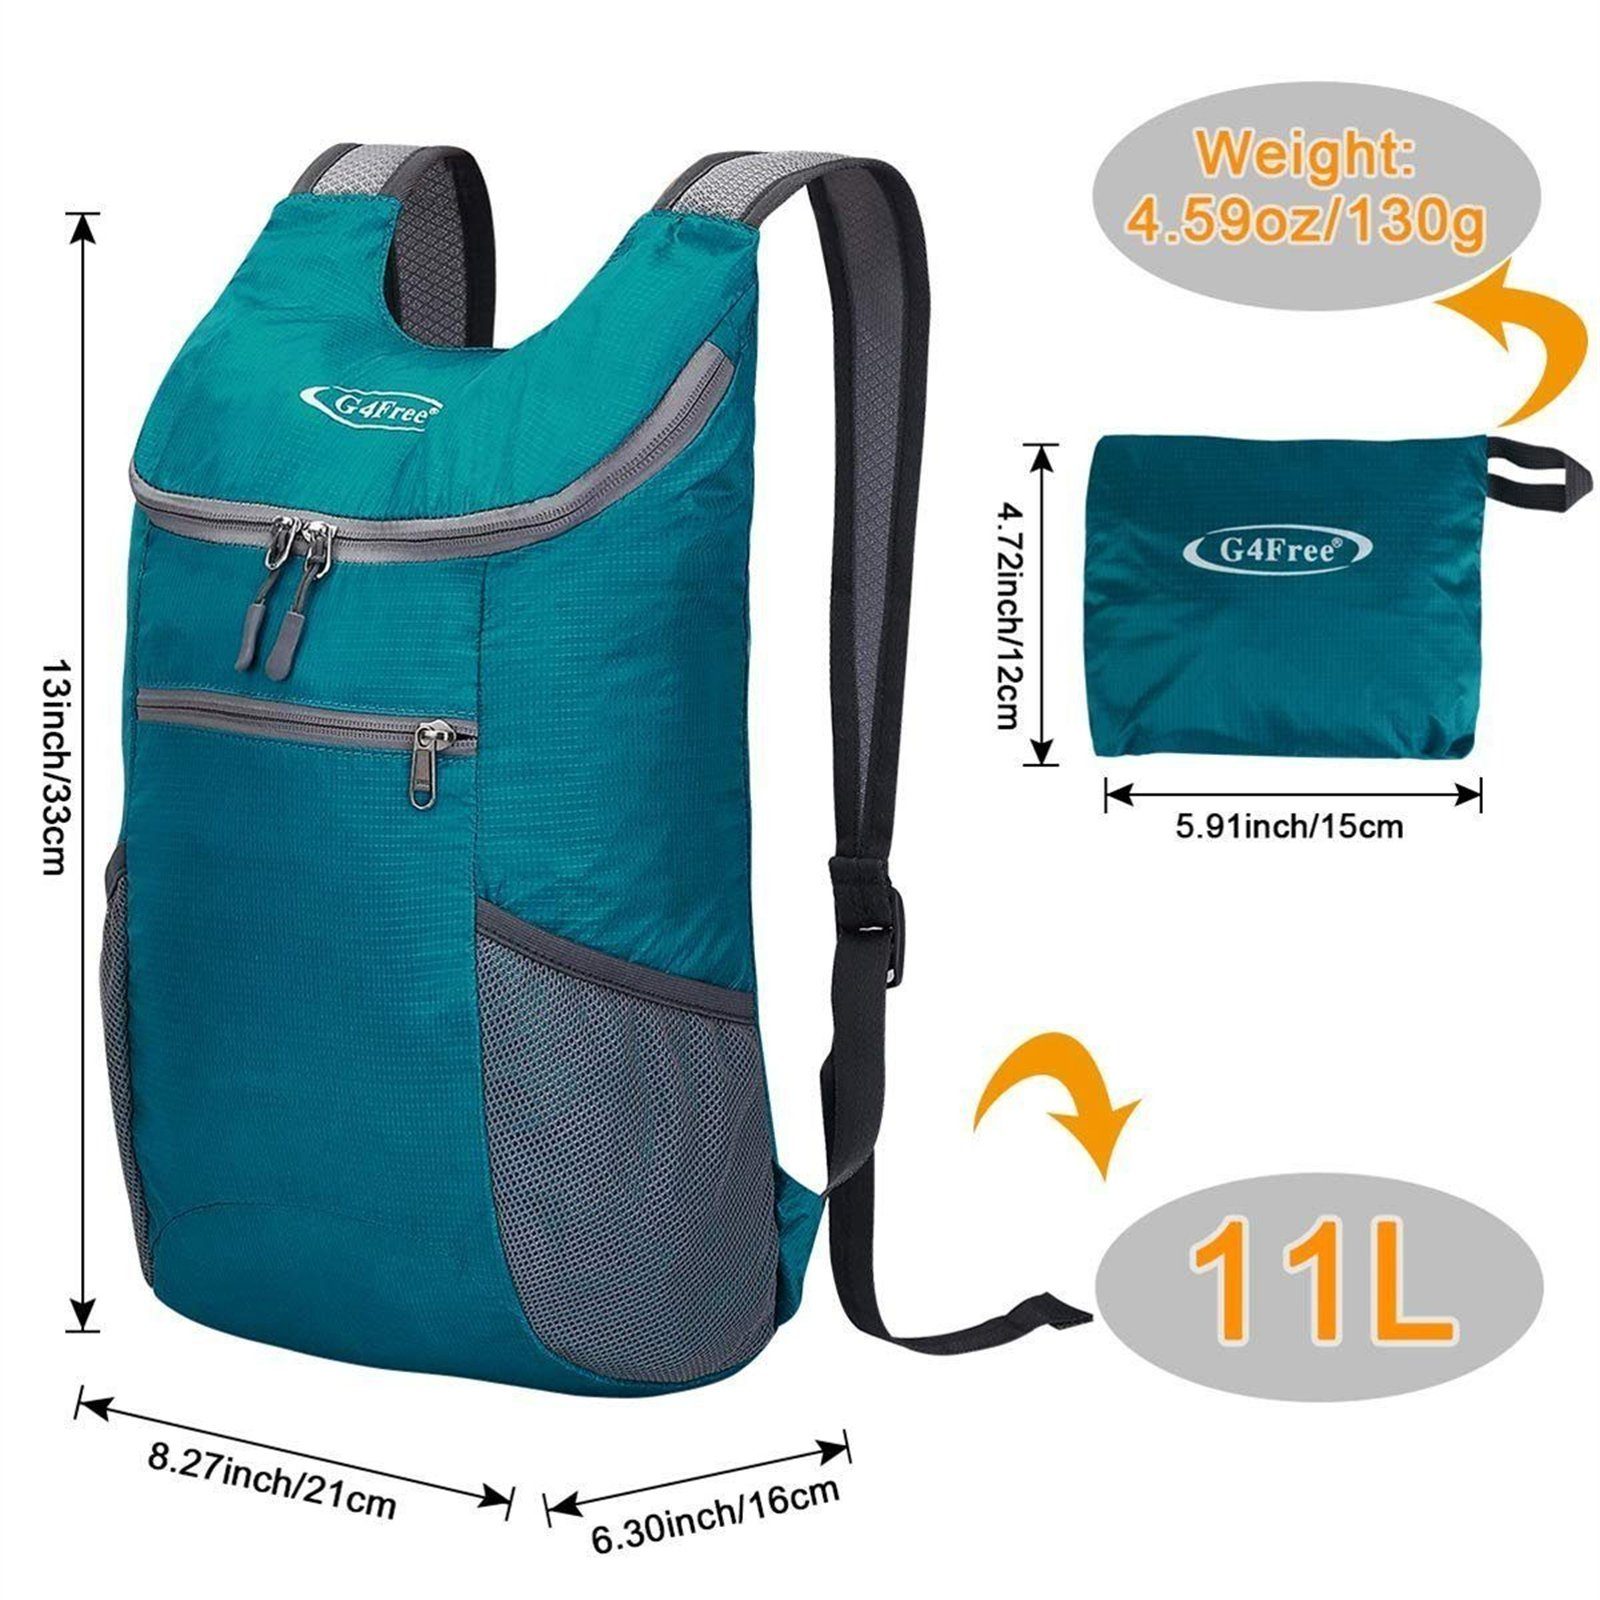 G4Free Wanderrucksack, Kleiner Rucksack Pfauenblau 11 Backpack L, Wanderrucksack